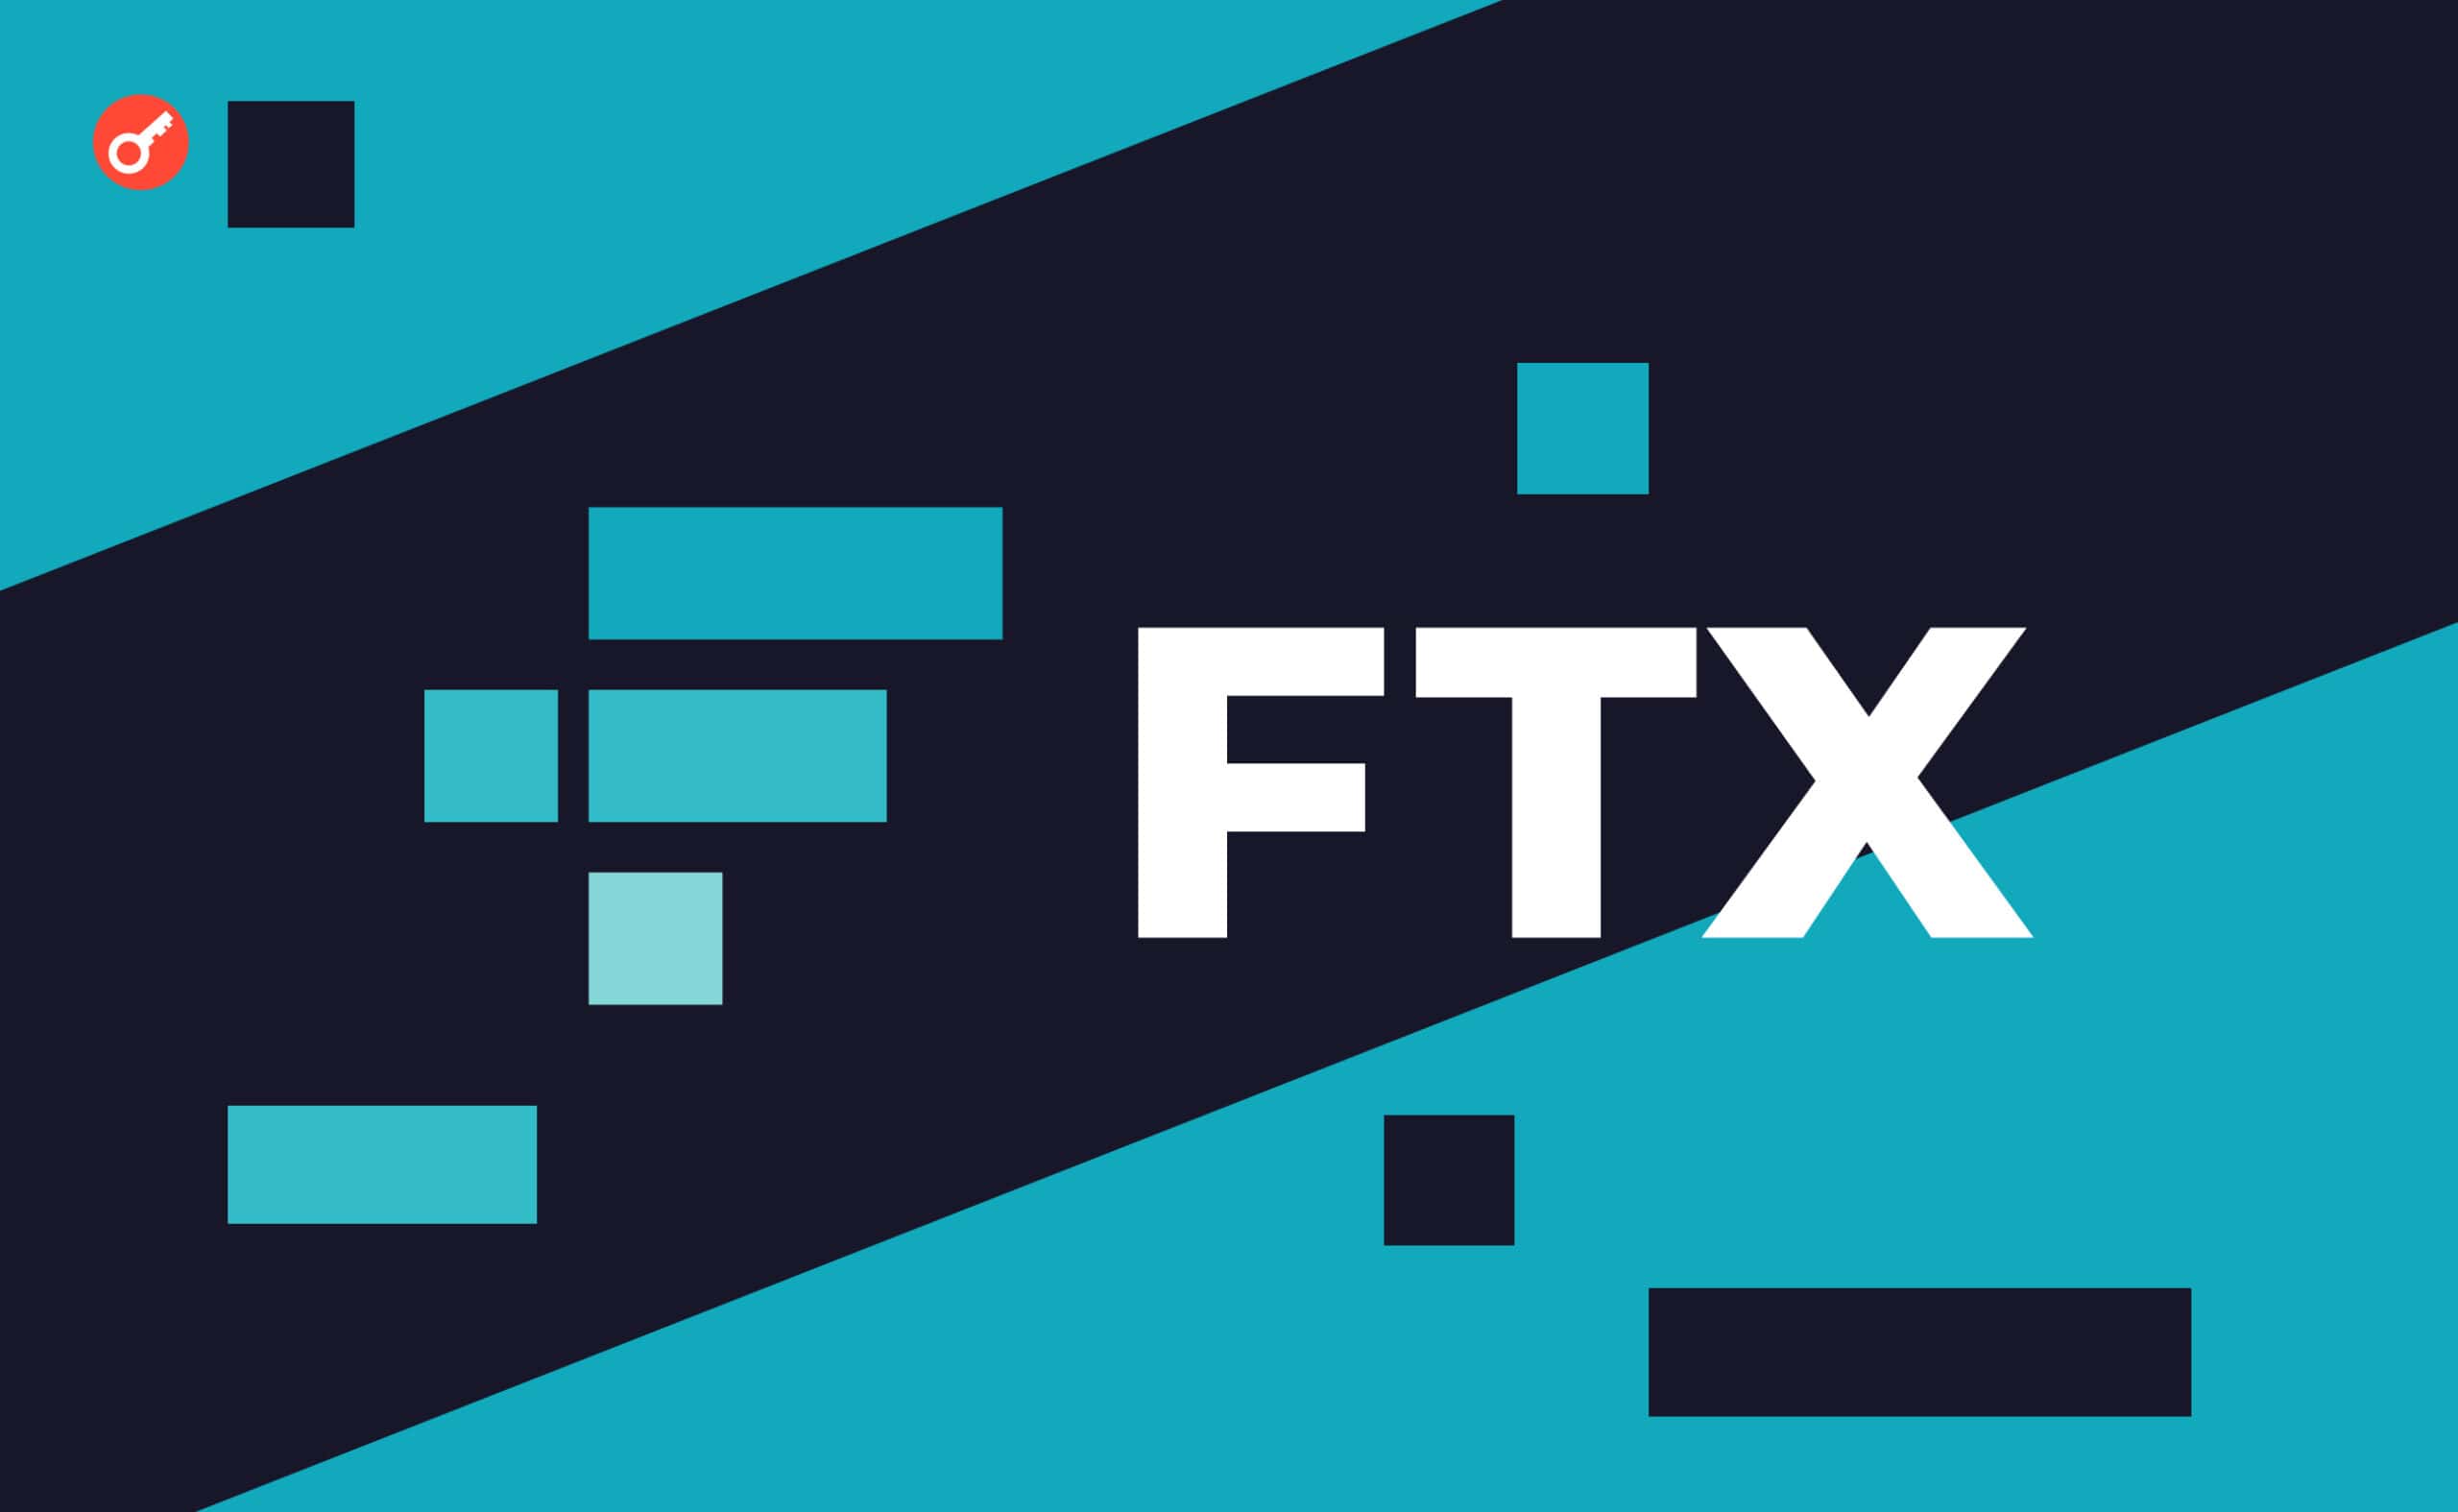 На этой неделе клиенты FTX получили письма якобы от биржи. В них говорится о том, что в ближайшее время суд назначит крайний срок для подачи заявок на возврат средств, после чего пользователям пришлют дальнейшие инструкции. 